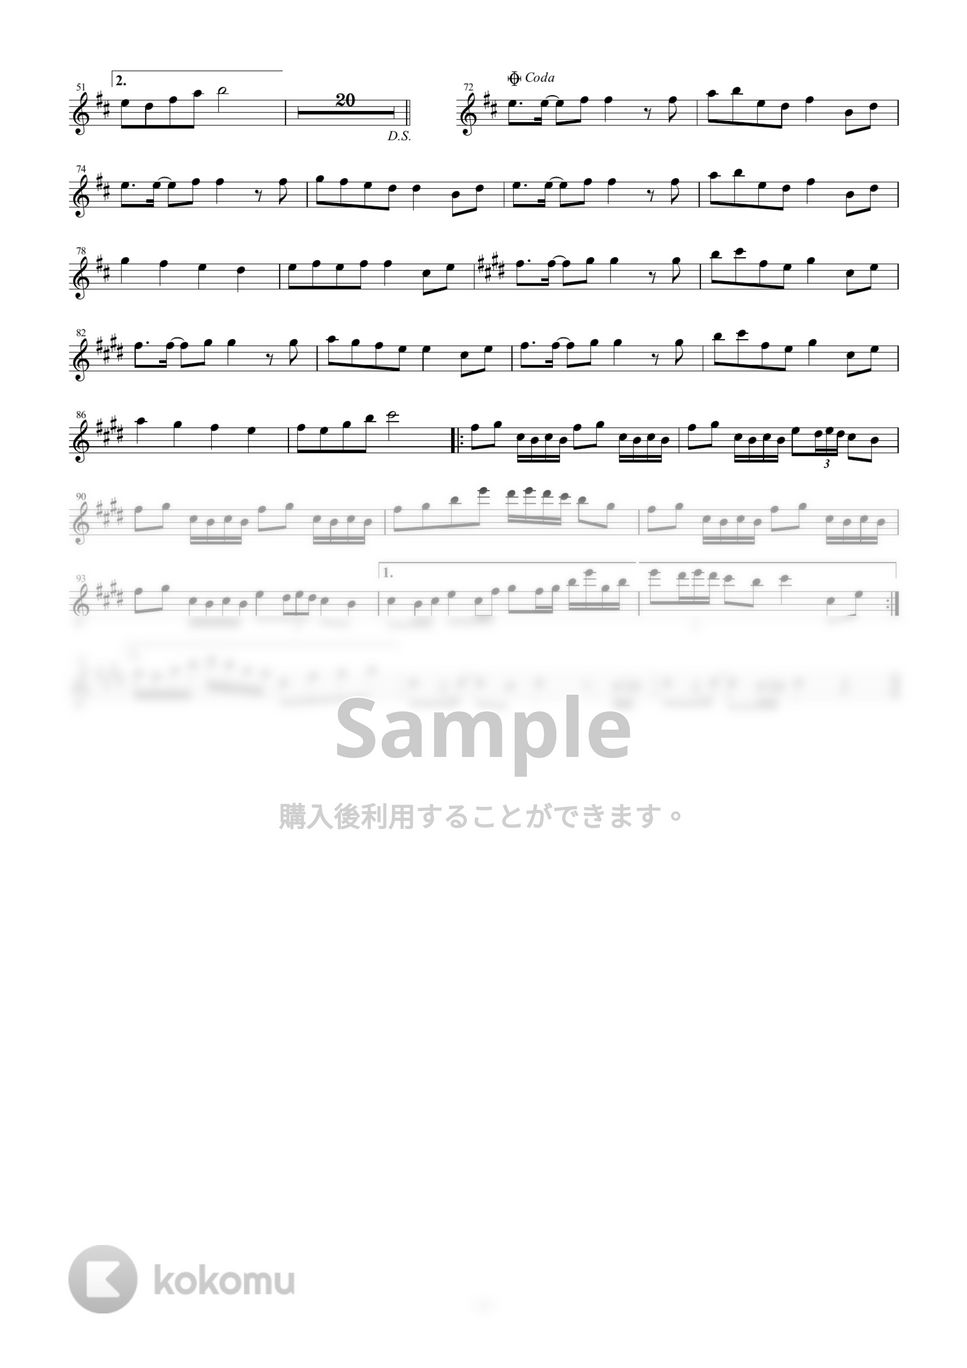 黒うさP - 千本桜 (in E♭) by y.shiori